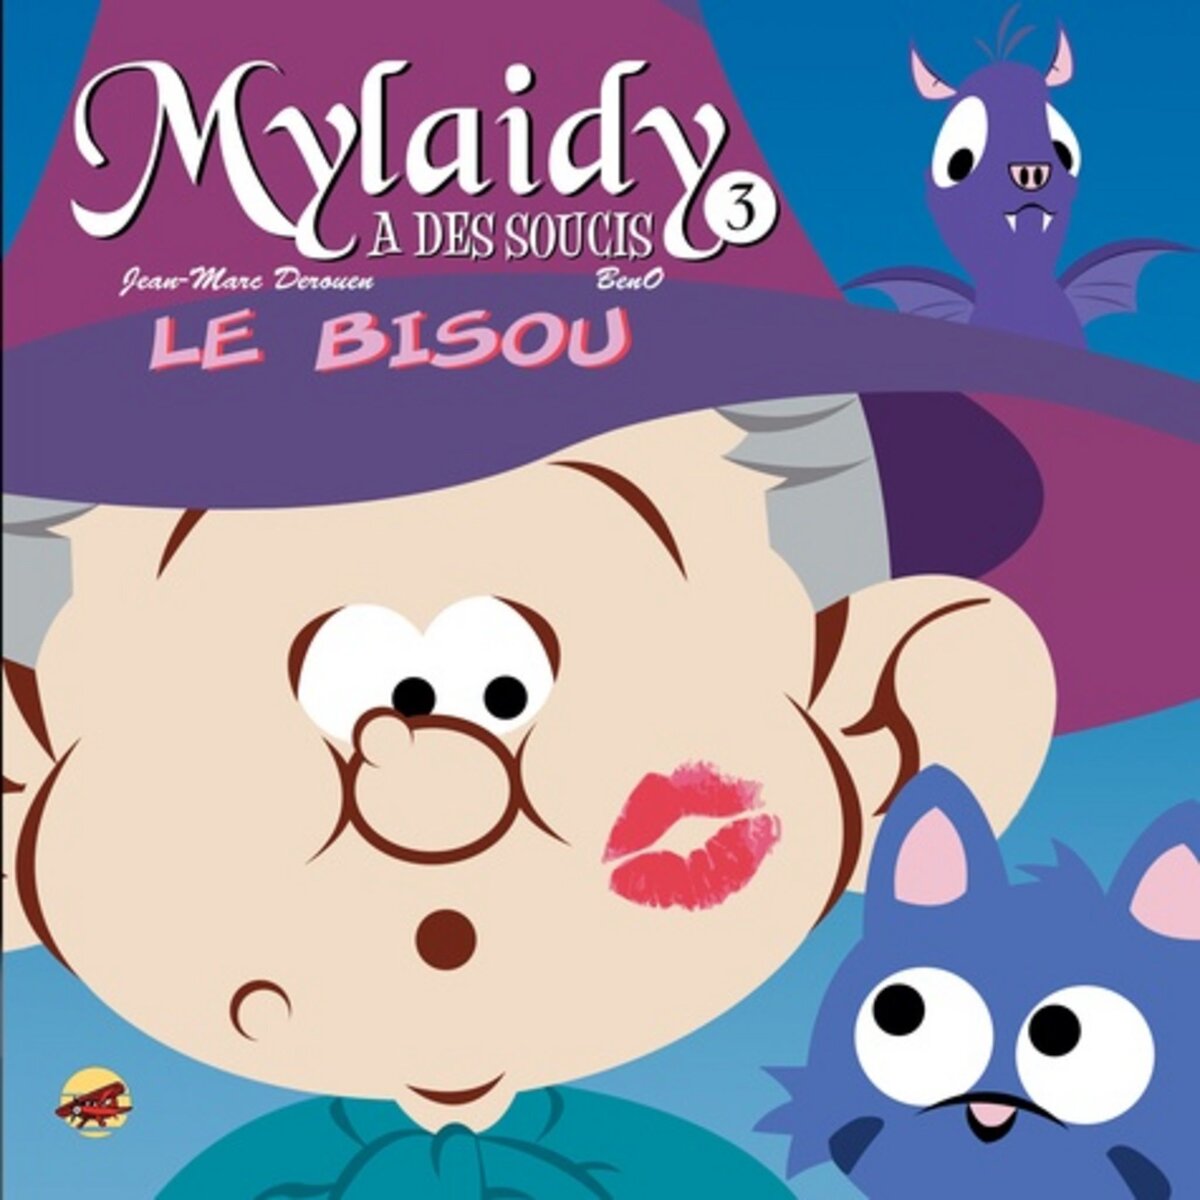  MYLAIDY A DES SOUCIS TOME 3 : LE BISOU, Derouen Jean-Marc